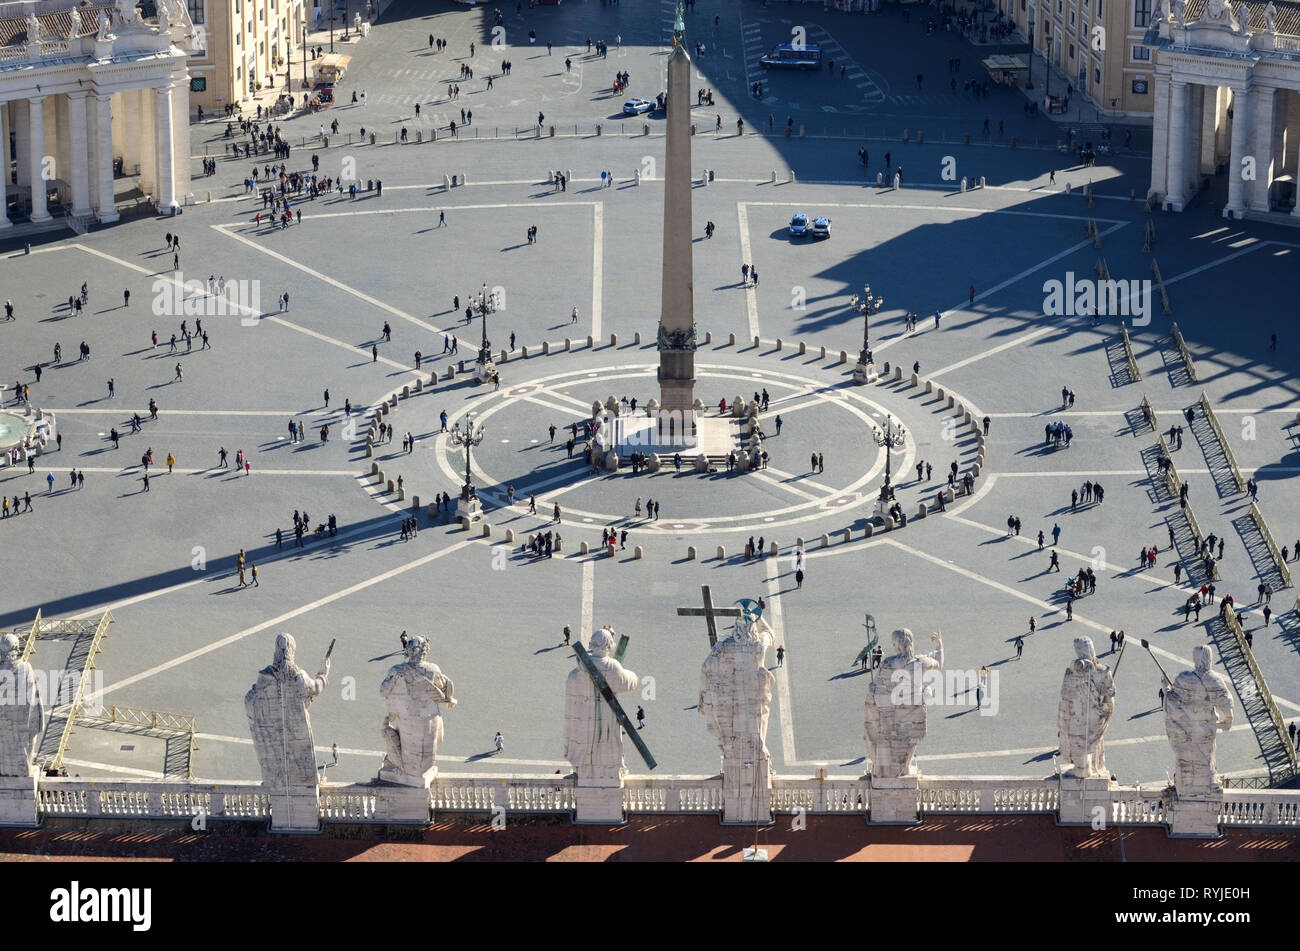 Vue aérienne de Saint Peters Square et obélisque égyptien, prises à partir de la coupole de la Basilique Saint-Pierre, Vatican Rome Italie Banque D'Images